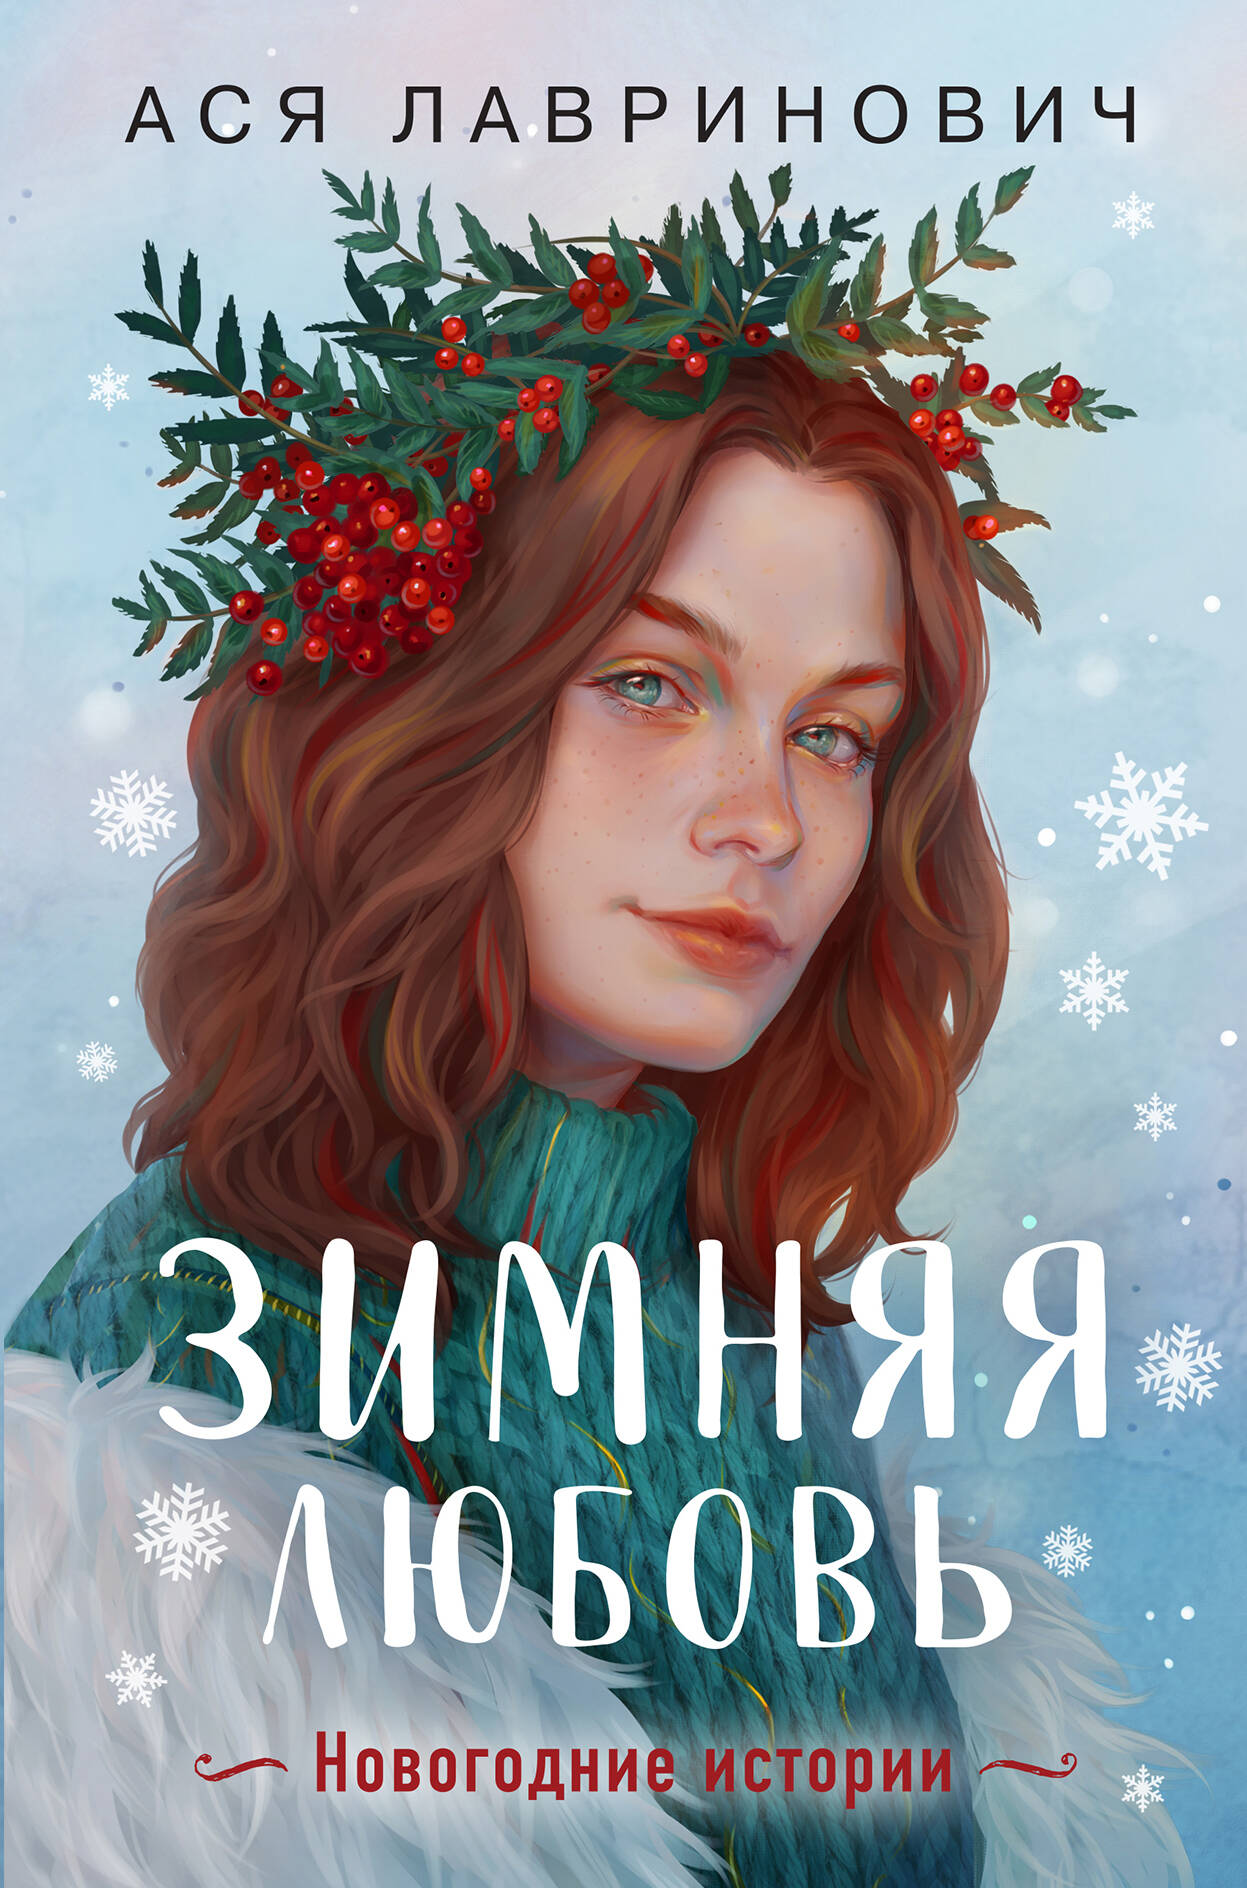  книга Зимняя любовь. Подарочное издание новогодних историй от Аси Лавринович